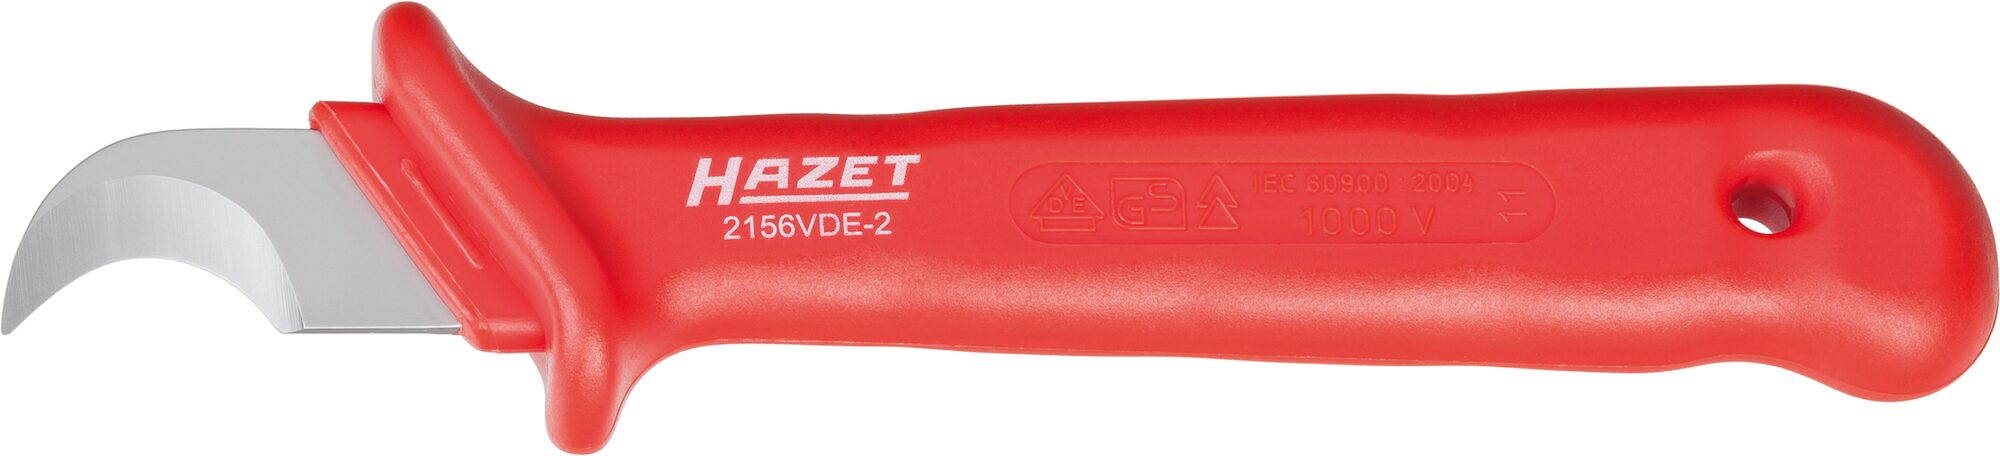 HAZET Kabel- und Abisoliermesser · schutzisoliert 2156VDE-2